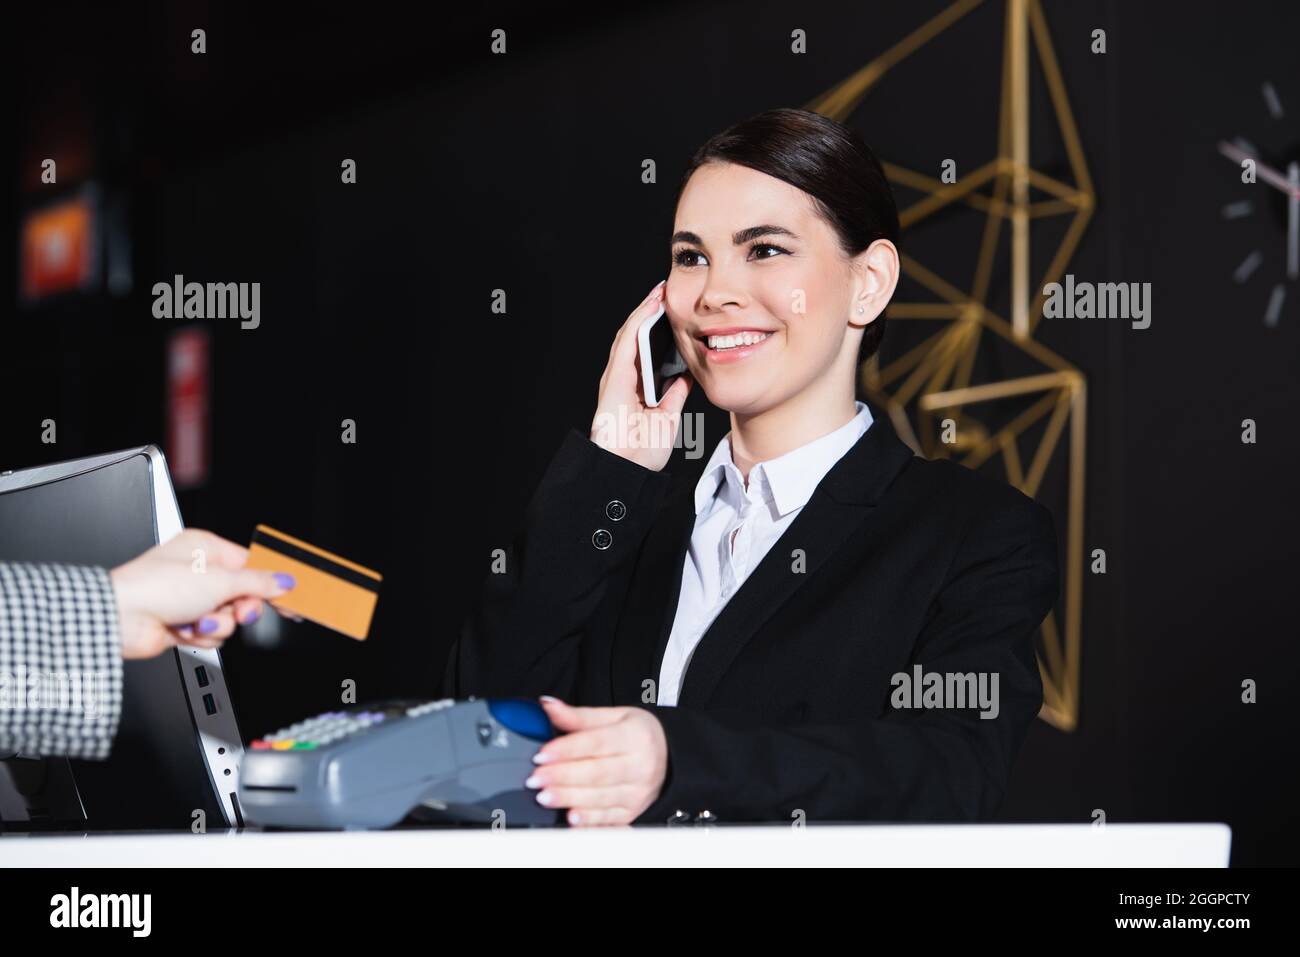 Der Rezeptionist lächelte und sprach mit dem Smartphone in der Nähe des Gastes mit Kreditkarte Stockfoto